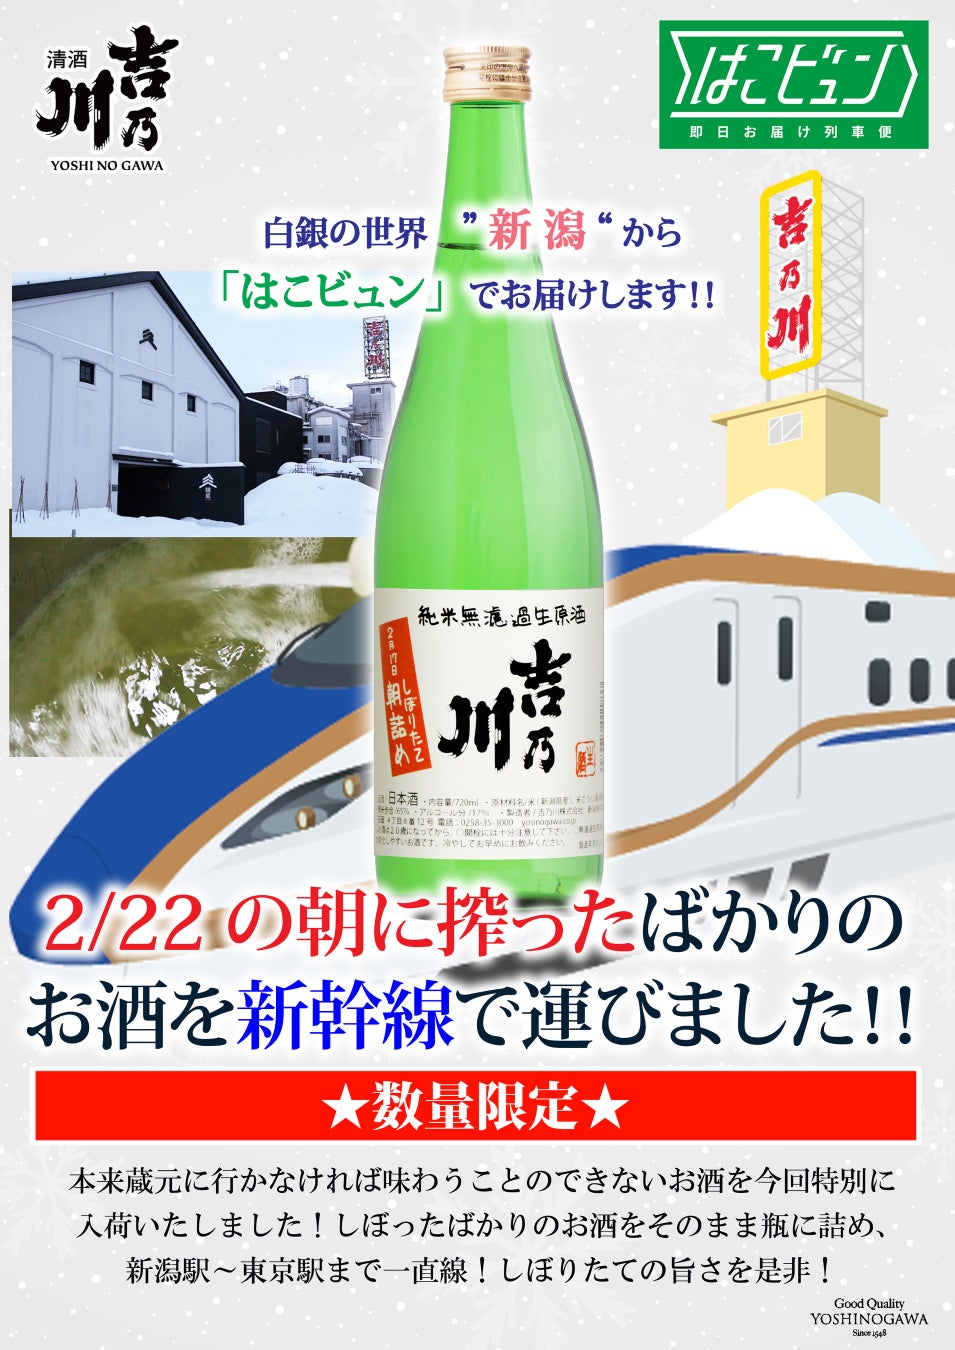 【数量限定販売】当日朝しぼりの日本酒「吉乃川 朝詰め しぼりたて純米無濾過生原酒」を新潟から新幹線でお届けします。